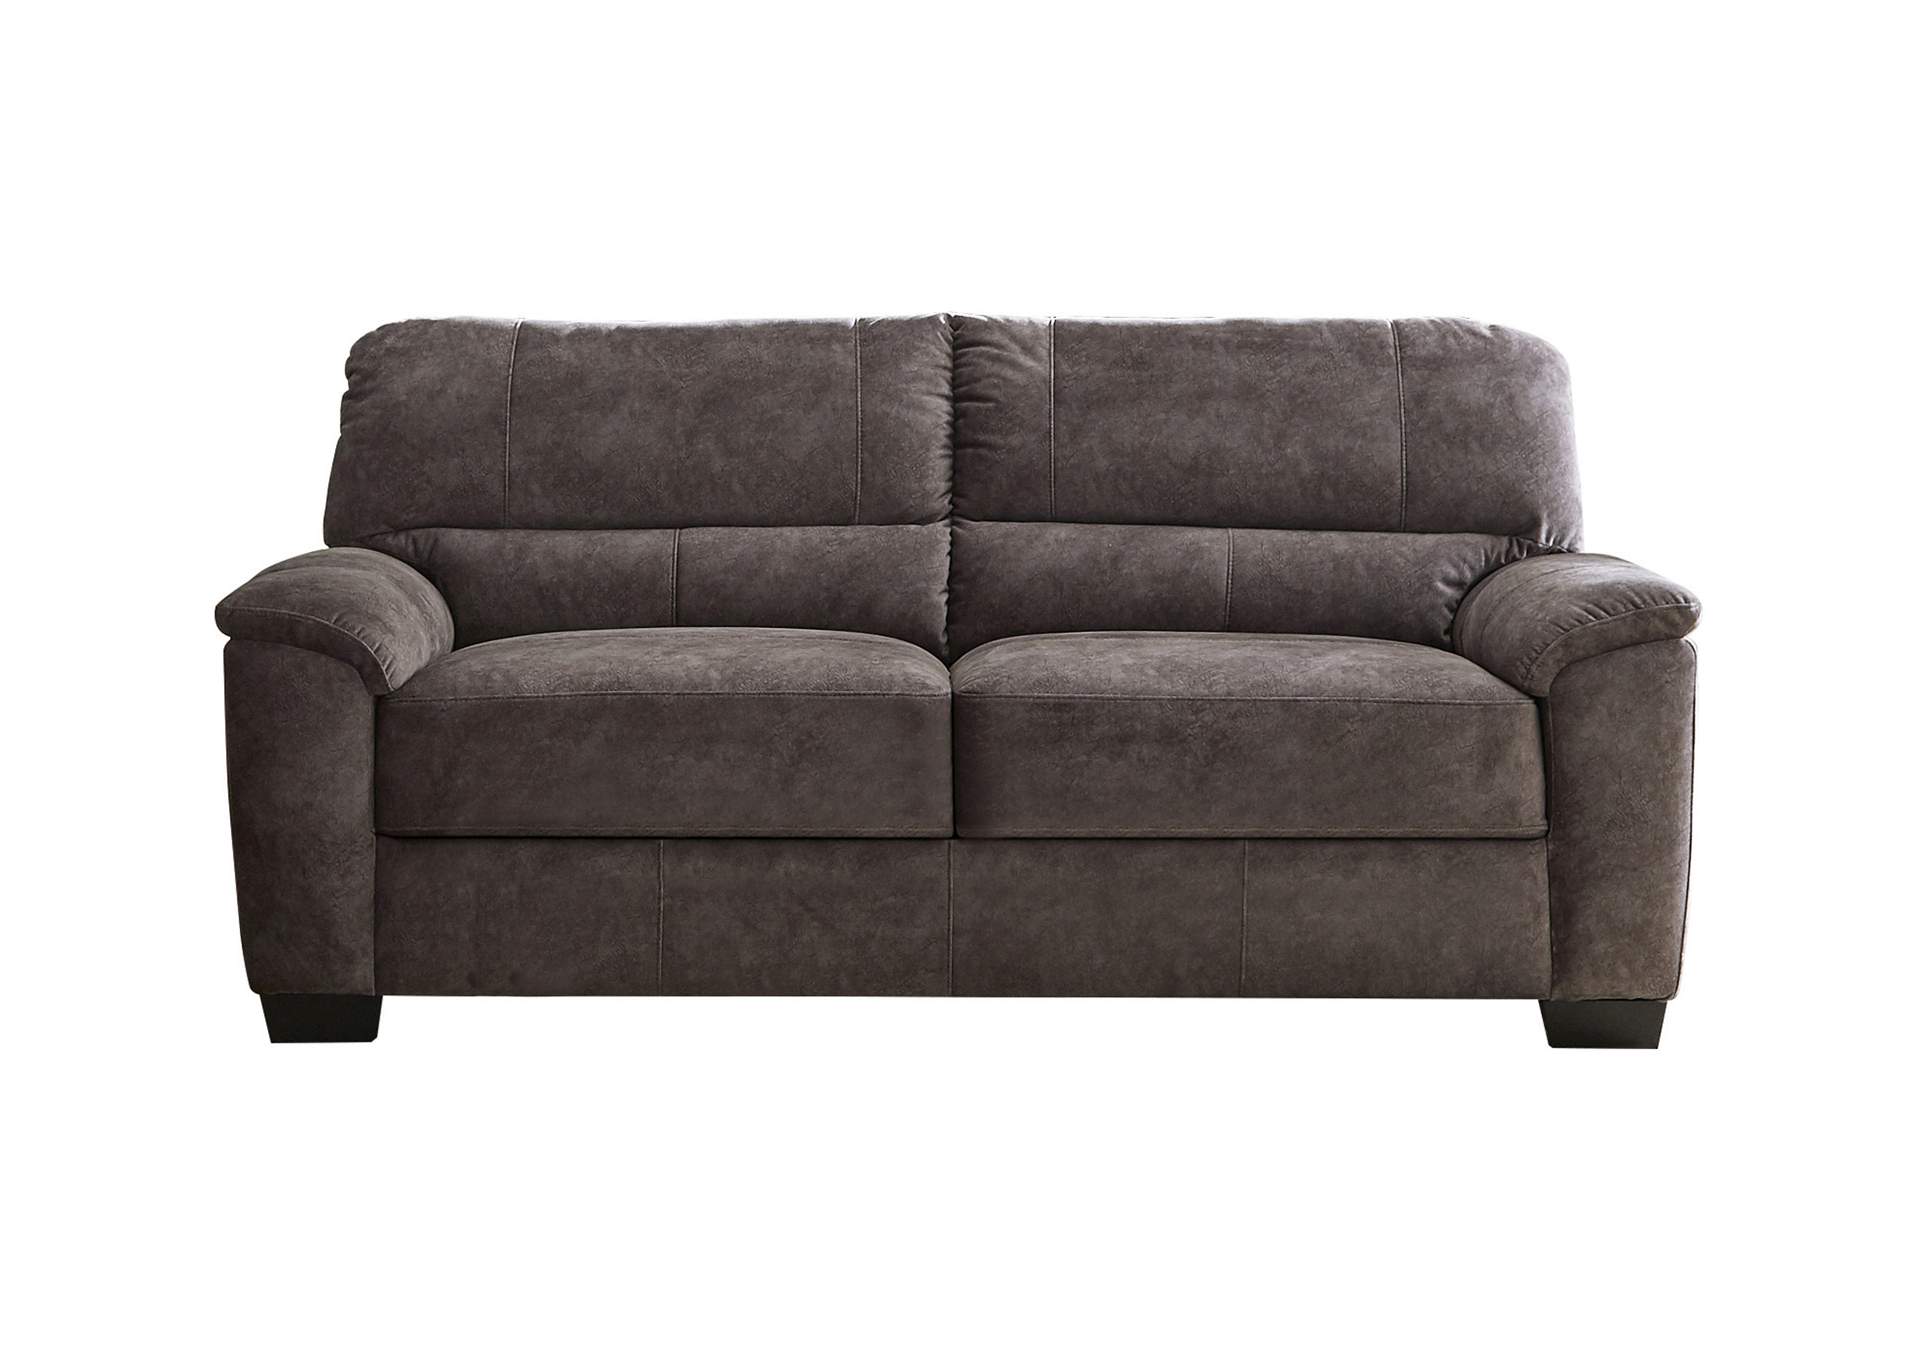 Hartsook Upholstered Pillow Top Arm Sofa Charcoal Grey,Coaster Furniture